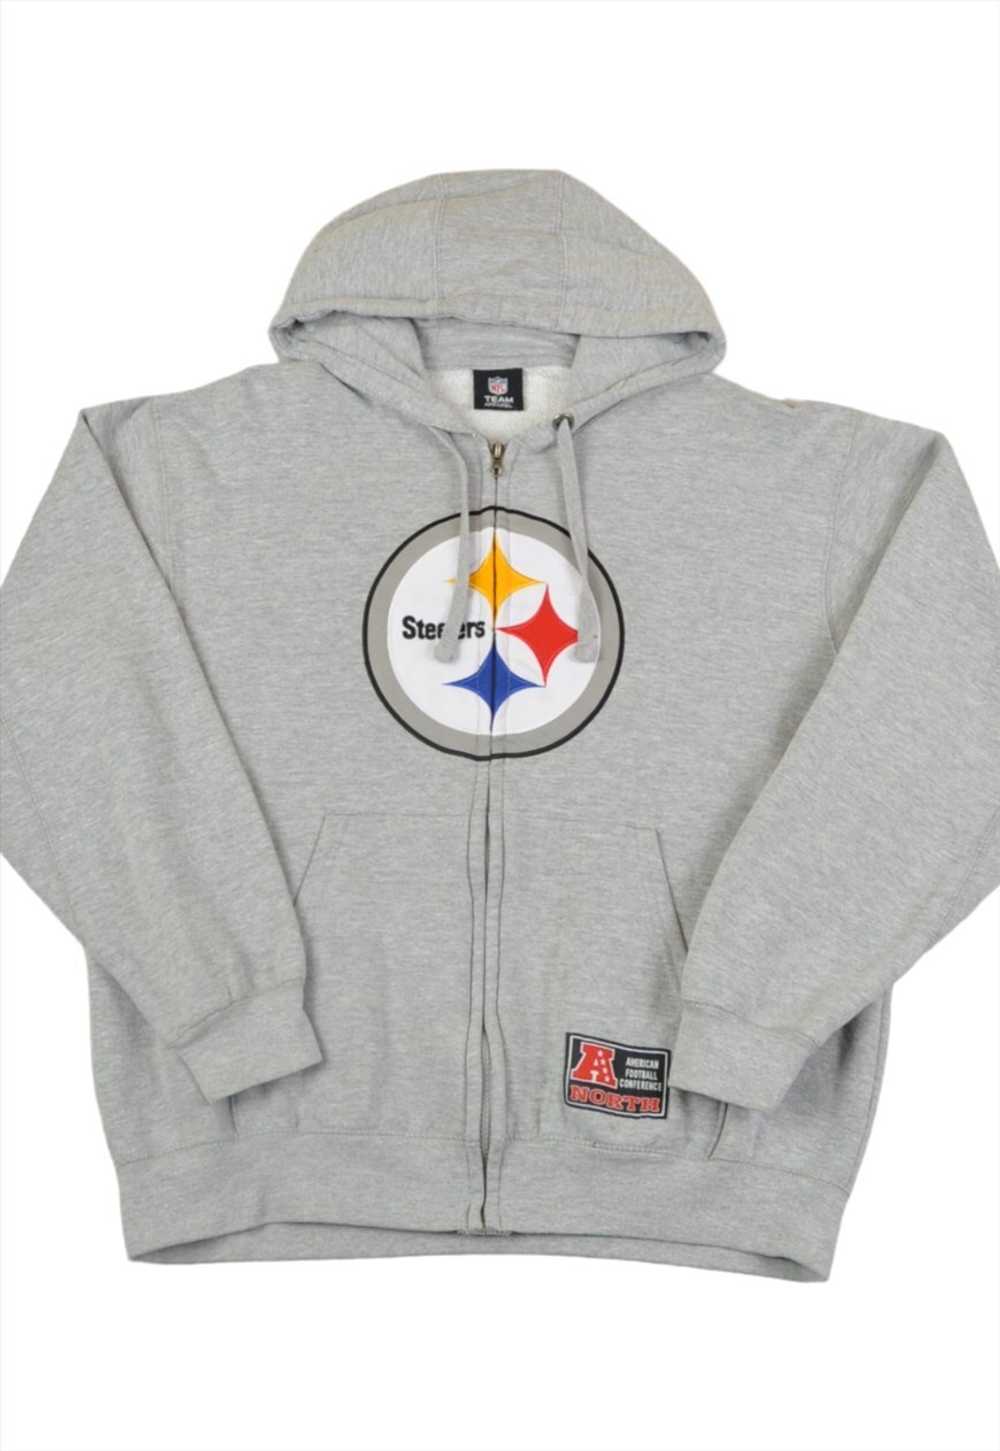 Vintage NFL Pittsburgh Steelers Hoodie Sweatshirt… - image 1